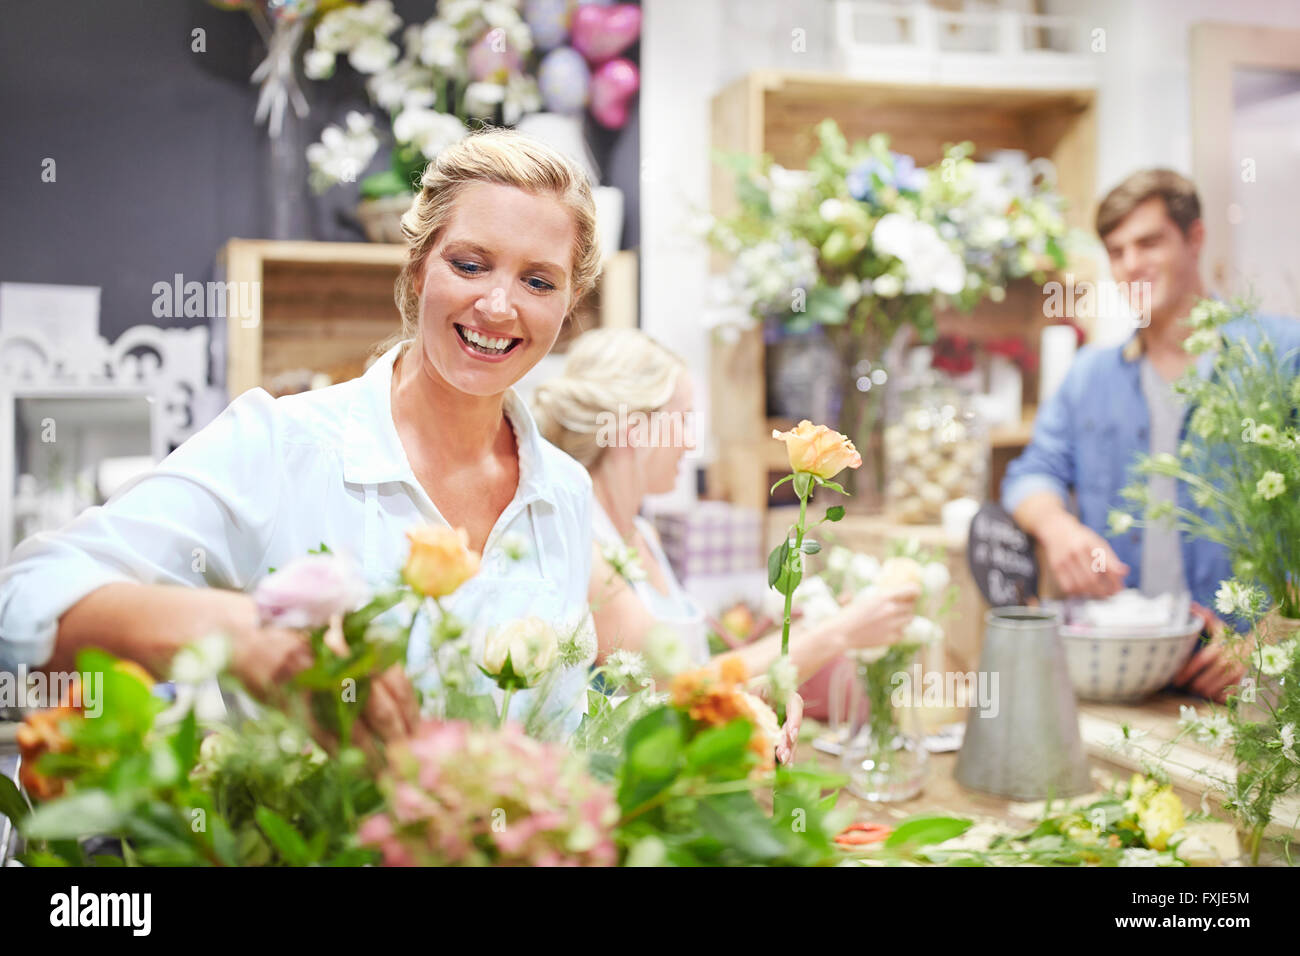 Smiling florist arranging bouquet in flower shop Stock Photo